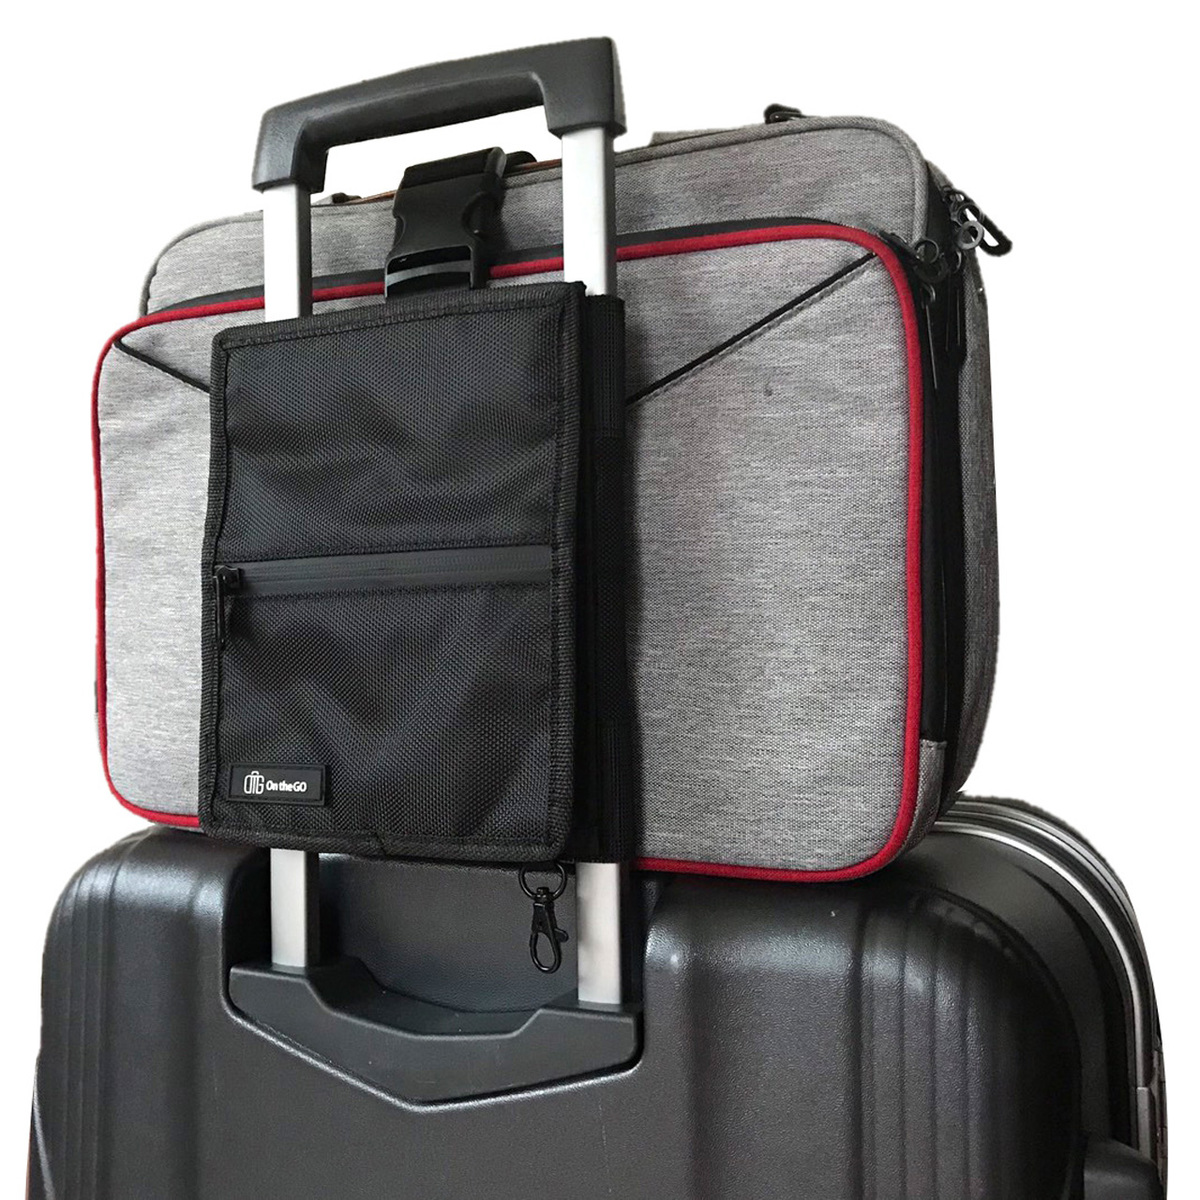 これで移動をもっと快適にしませんか？ On 期間限定送料無料 ブランド品 the GO オンザゴー スーツケースとバッグを固定するベルト付 財布やパスポート収納 旅行便利グッズ オーガナイザー スーツケースに取り付け